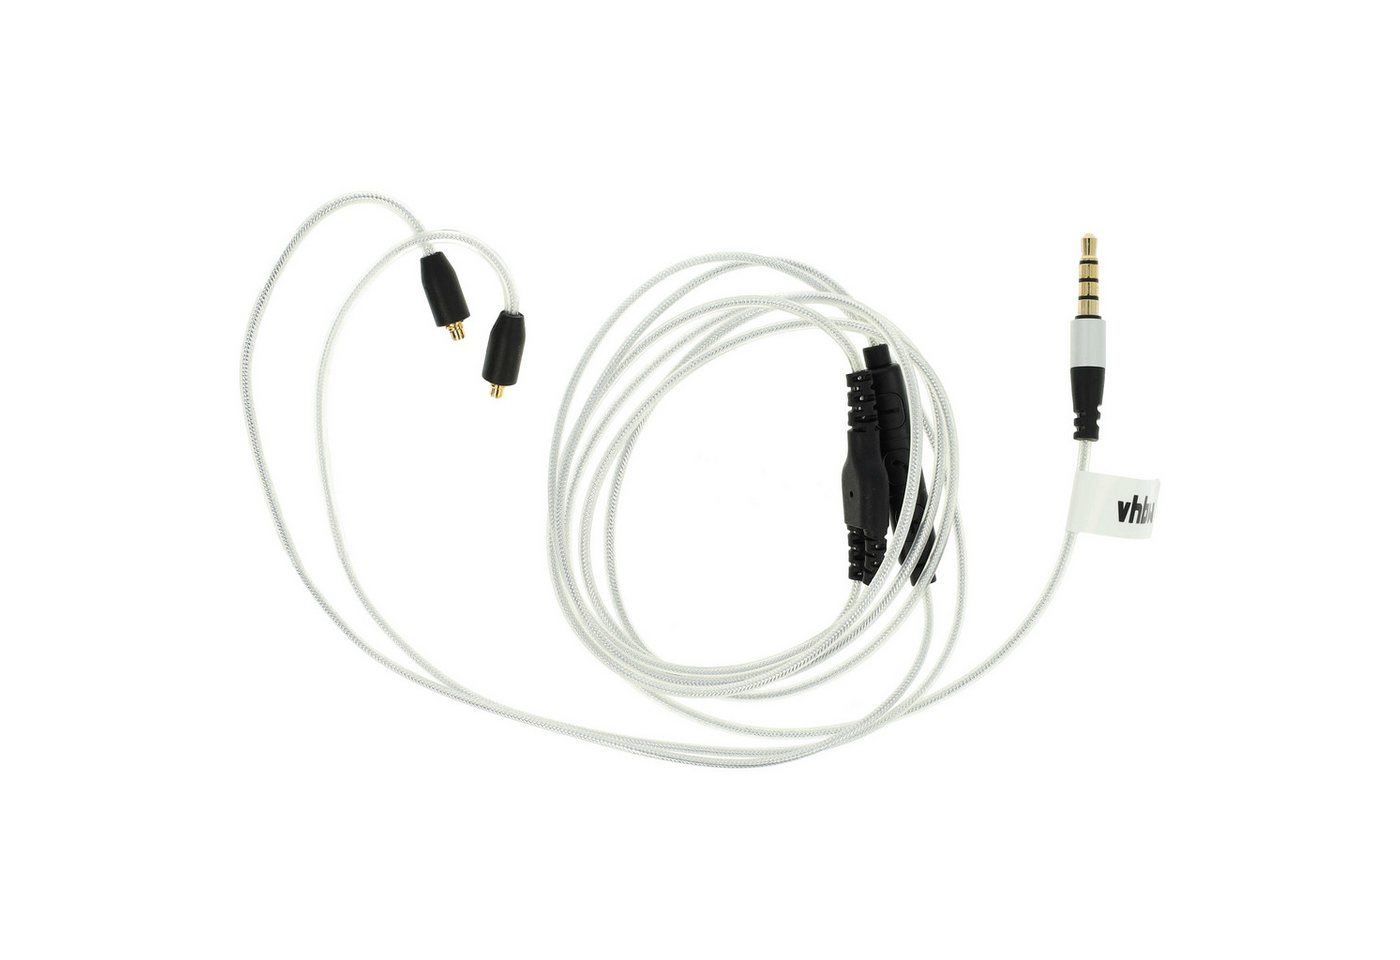 vhbw passend für Shure SE215, SE315, SE425, SE535, SE846 Kopfhörer Audio-Kabel, passend für Shure SE215, SE315, SE425, SE535, SE846 Kopfhörer von vhbw